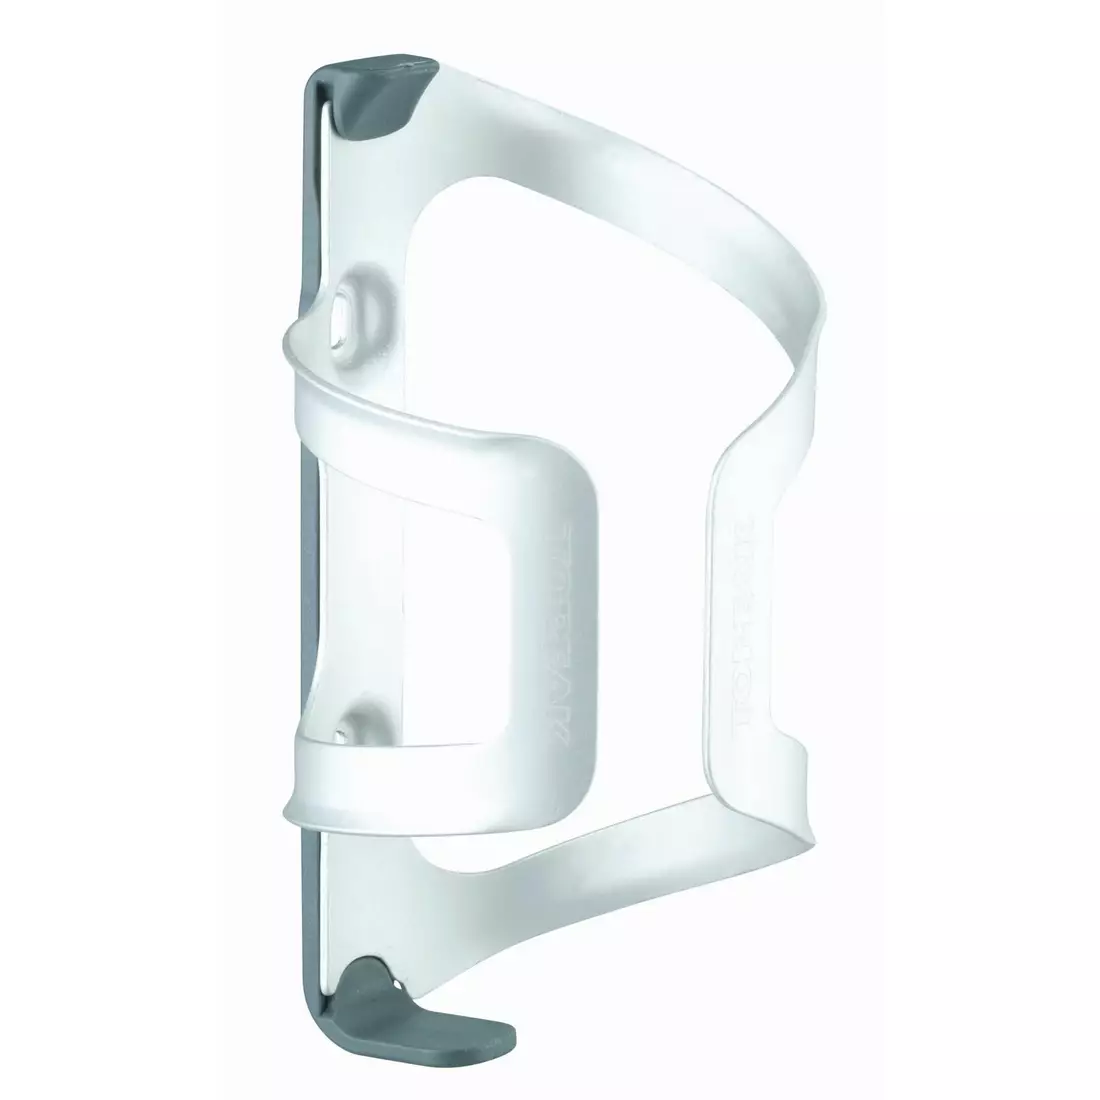 TOPEAK DUALSIDE CAGE cușcă pentru sticle cu două fețe argintiu TDSC01-S